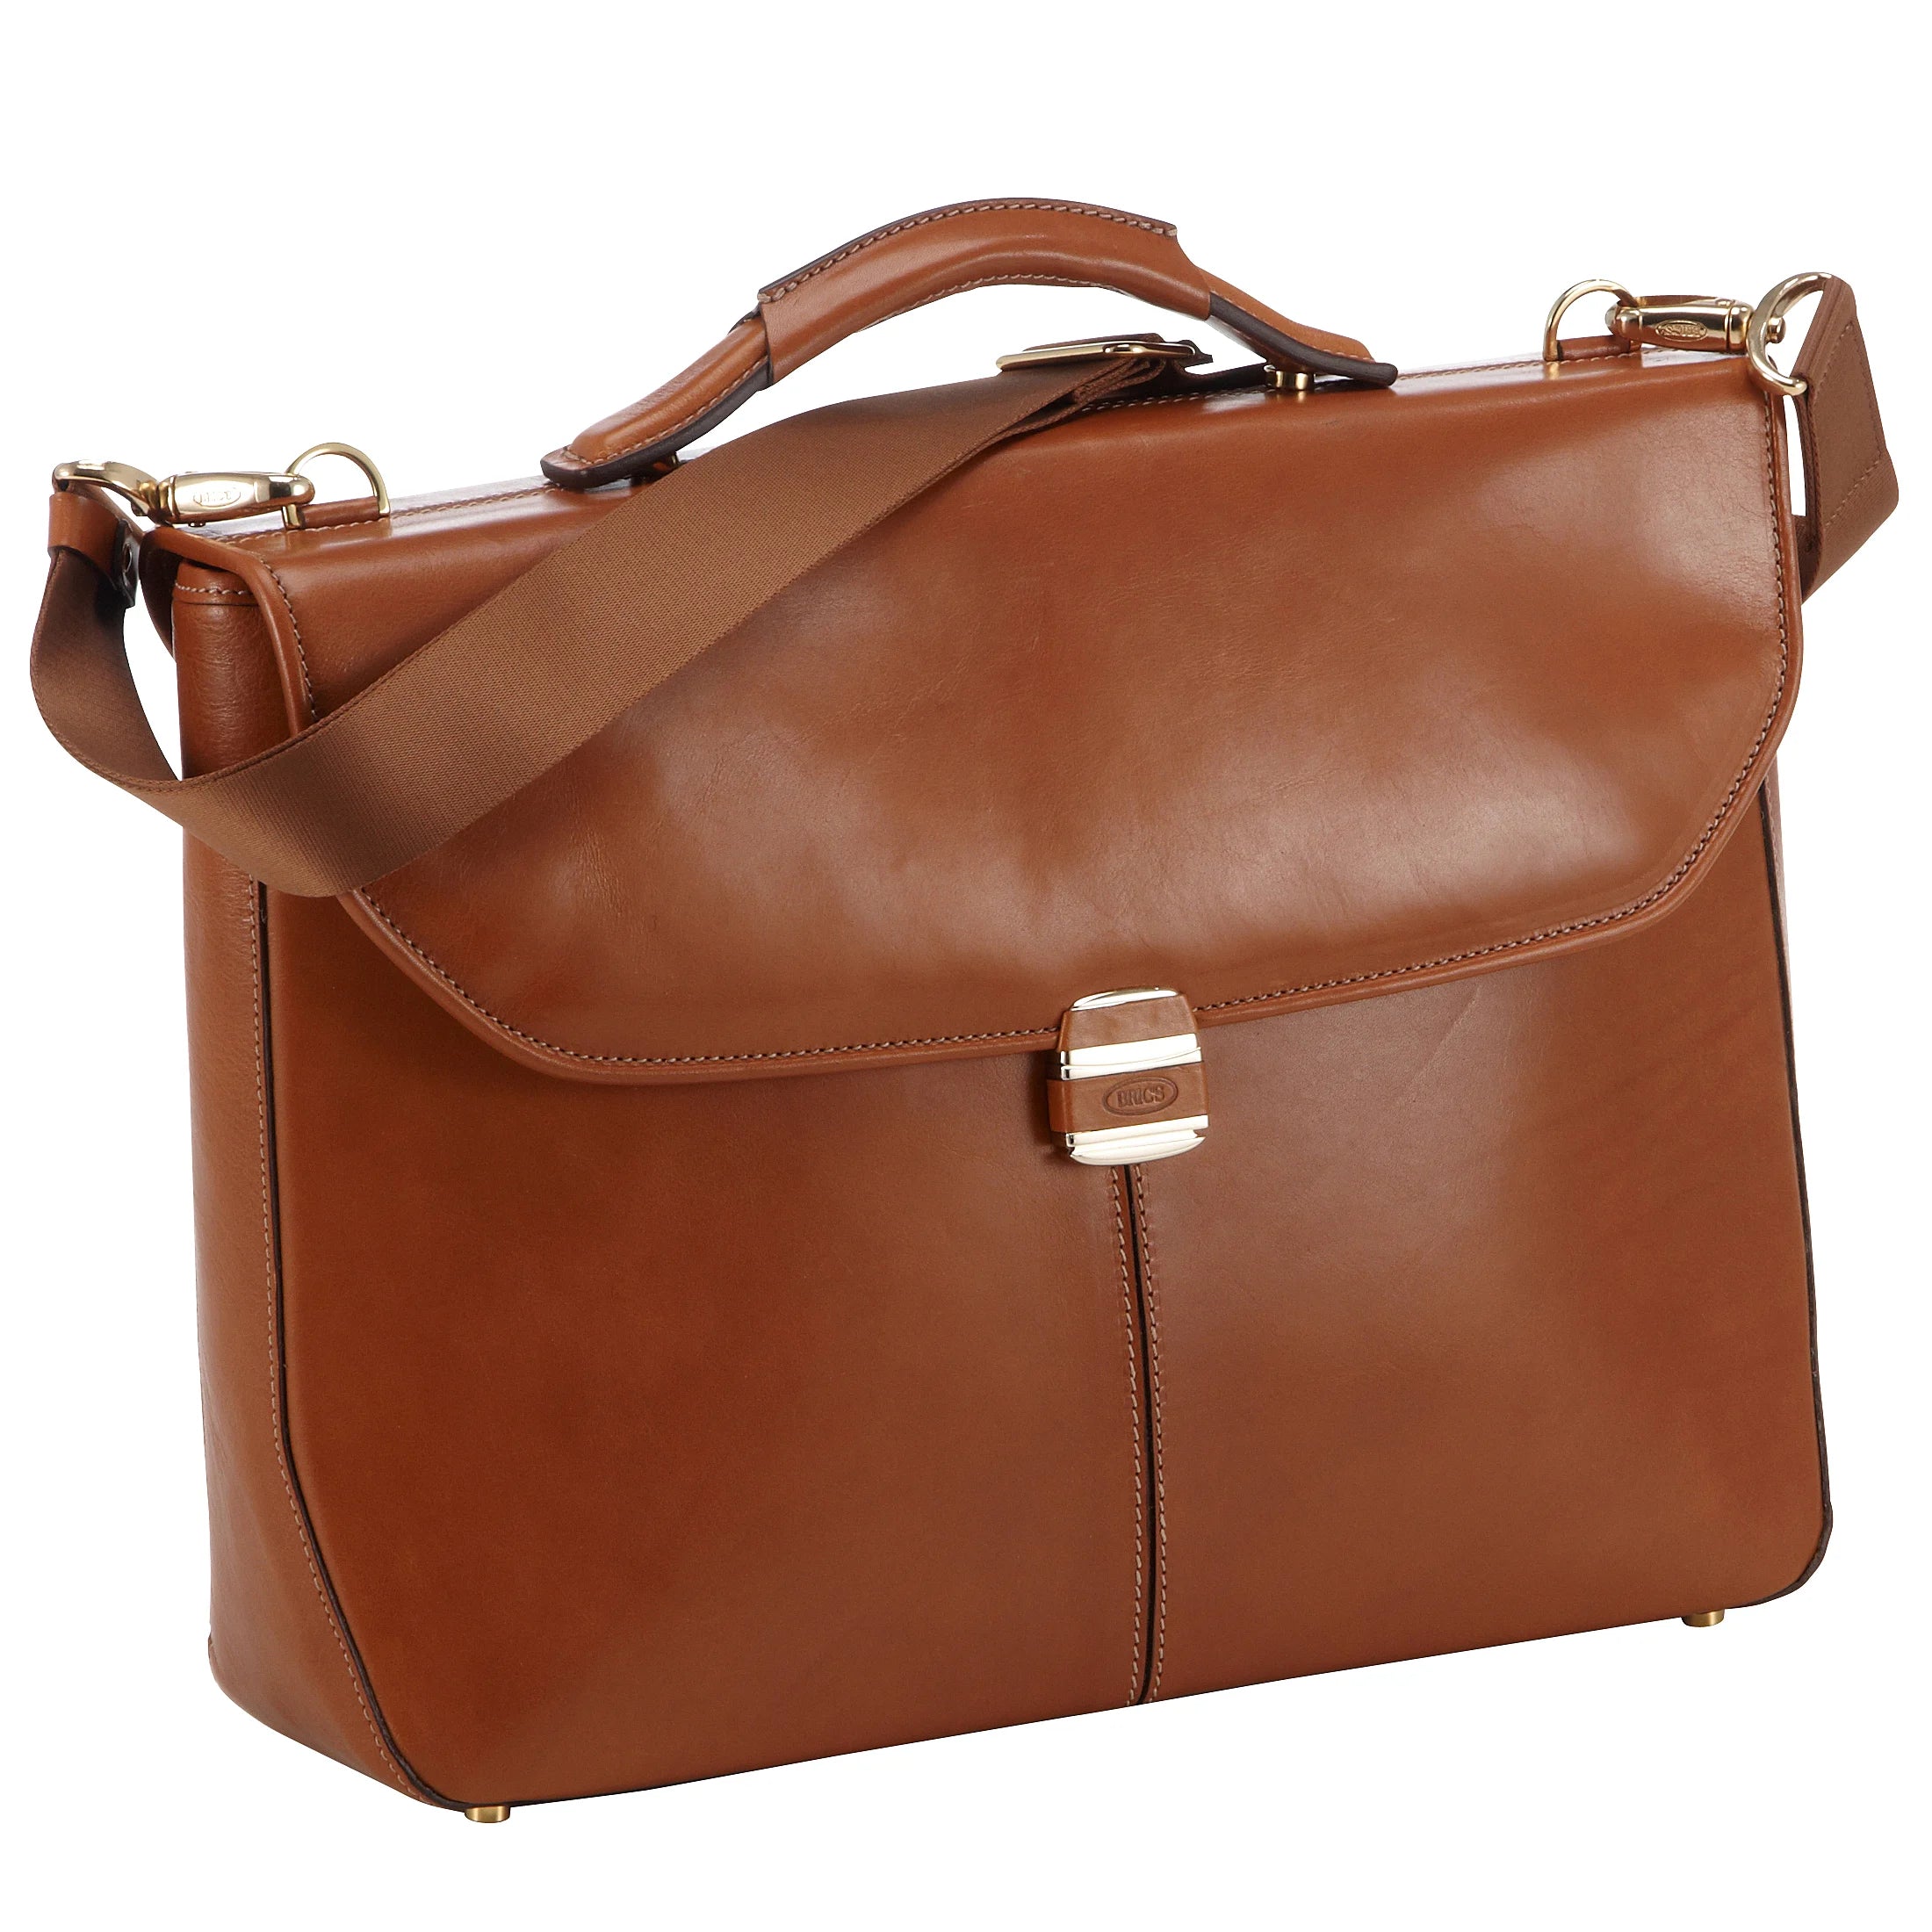 Brics Life Pelle briefcase with laptop compartment 40 cm - cognac